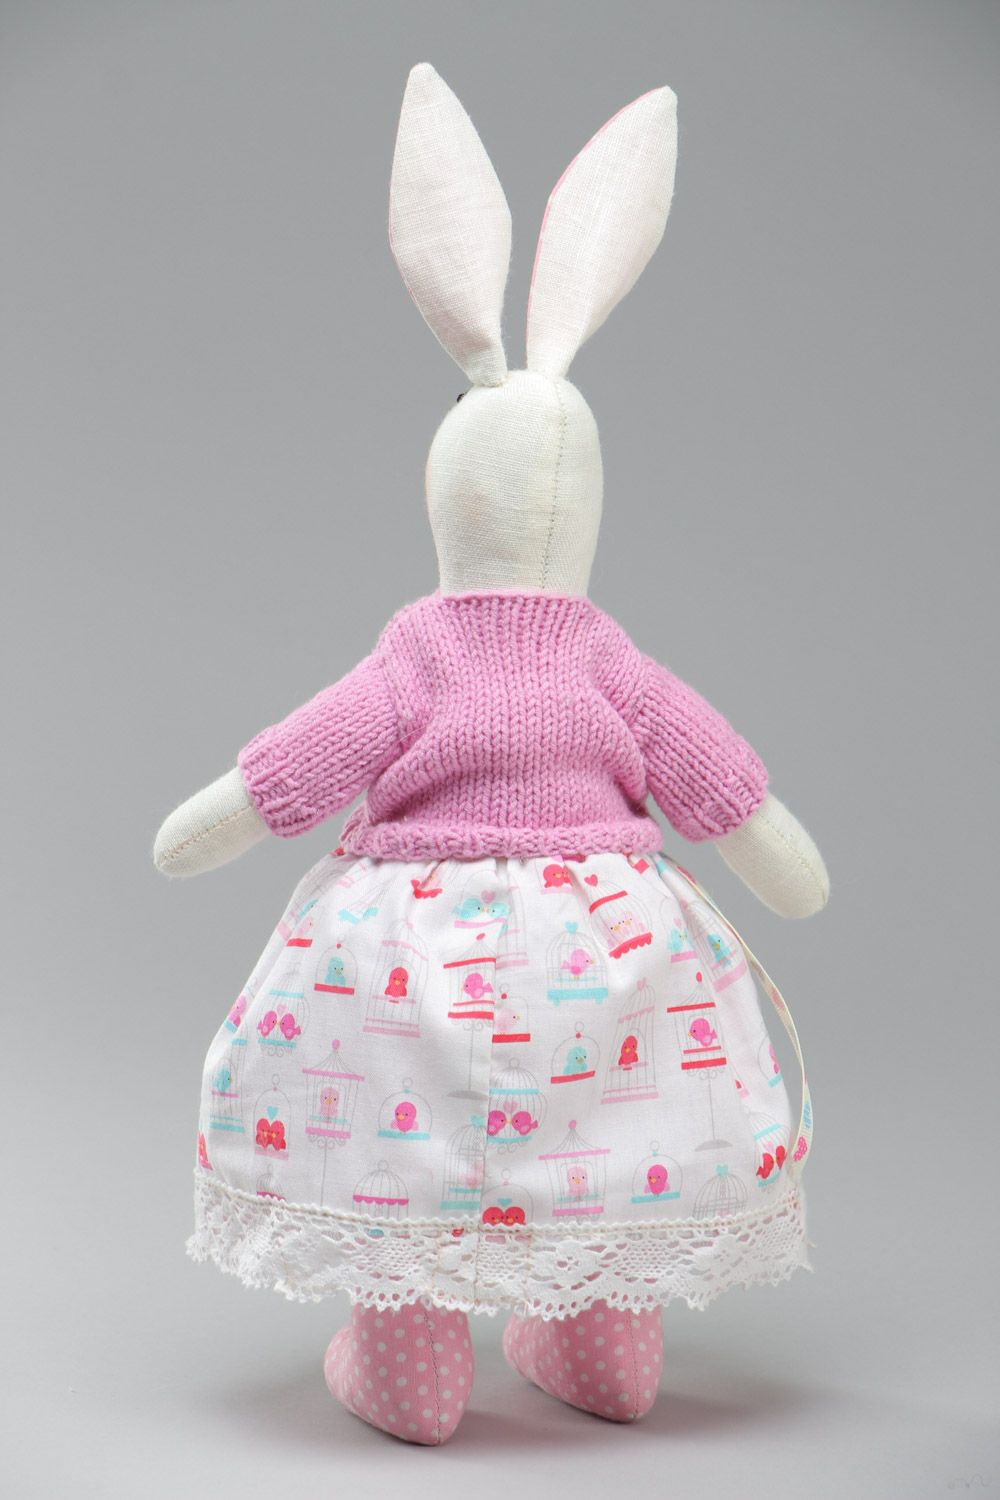 Textil Kuscheltier Hase im rosa Trägerkleid handmade für Kinder schön foto 4